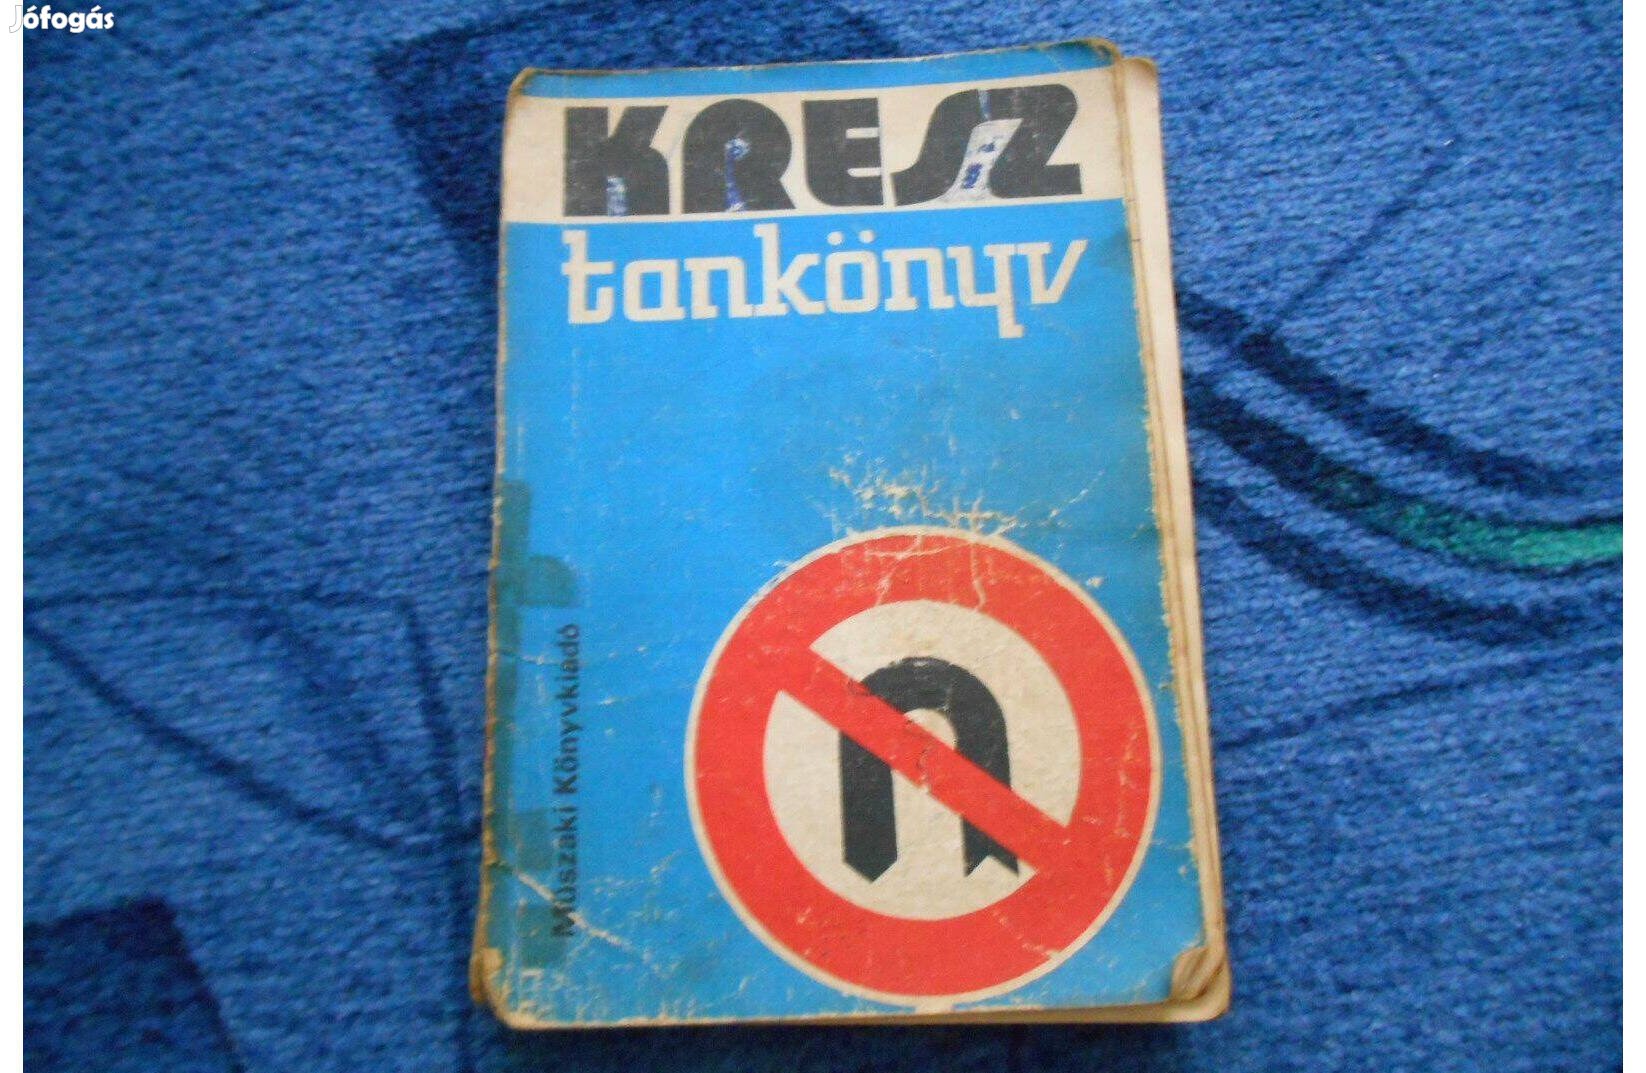 Kresz tankönyv 1975